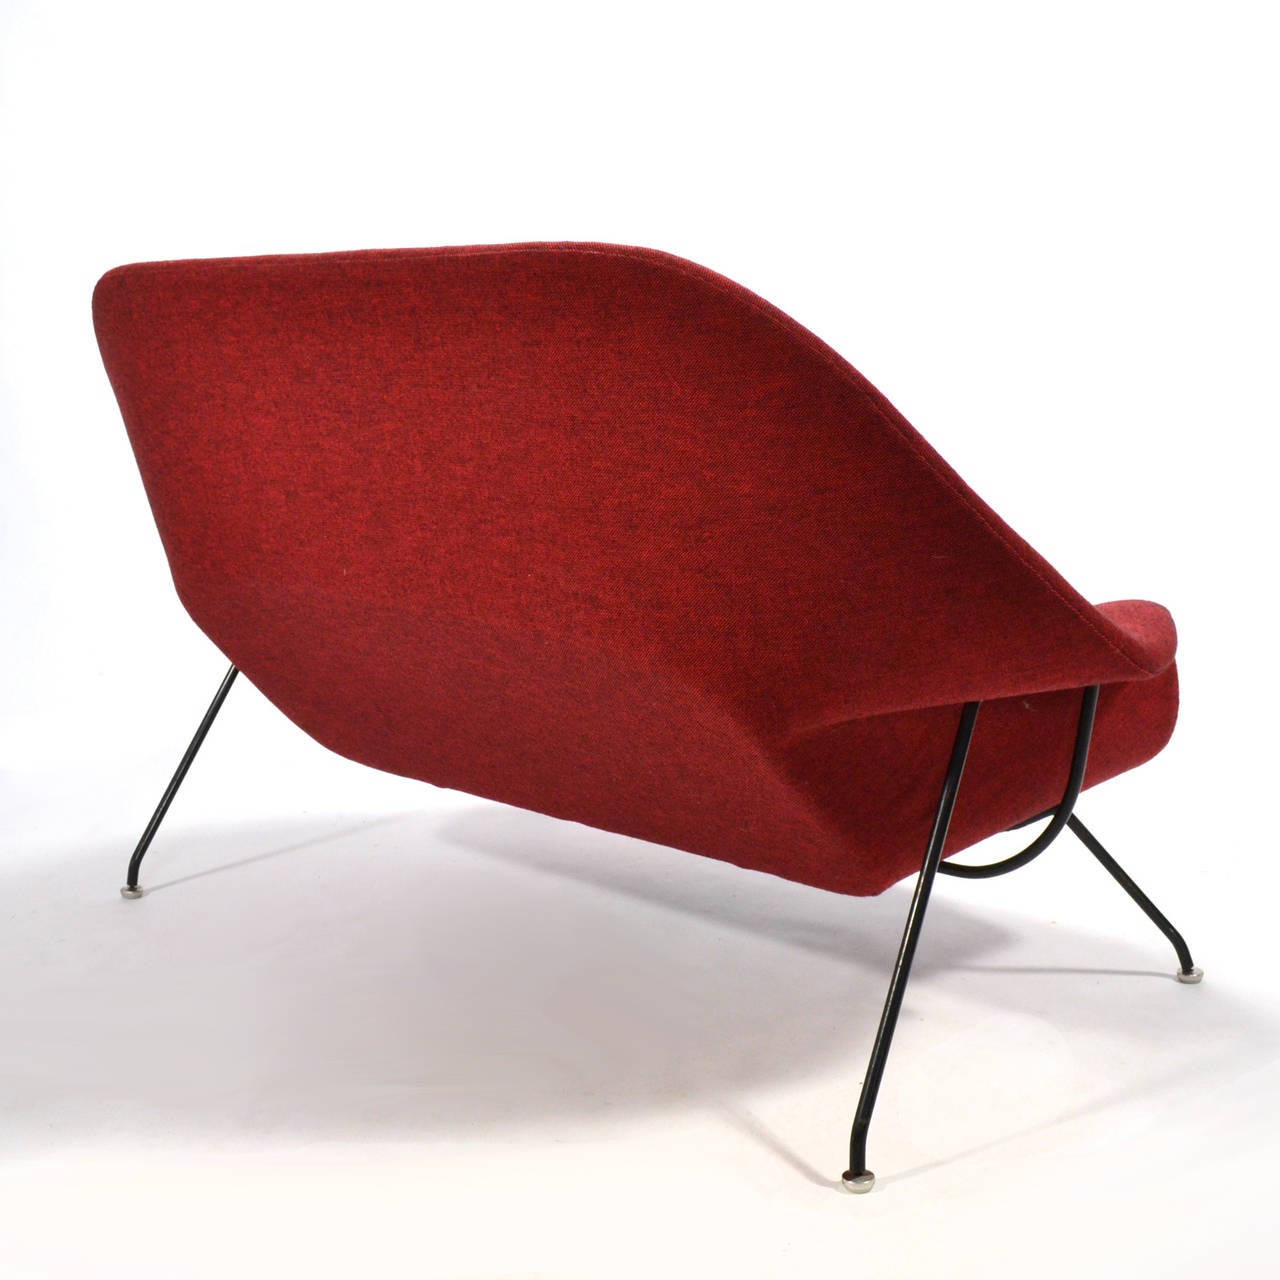 American Eero Saarinen Womb Settee Upholstered in Alexander Girard Fabric